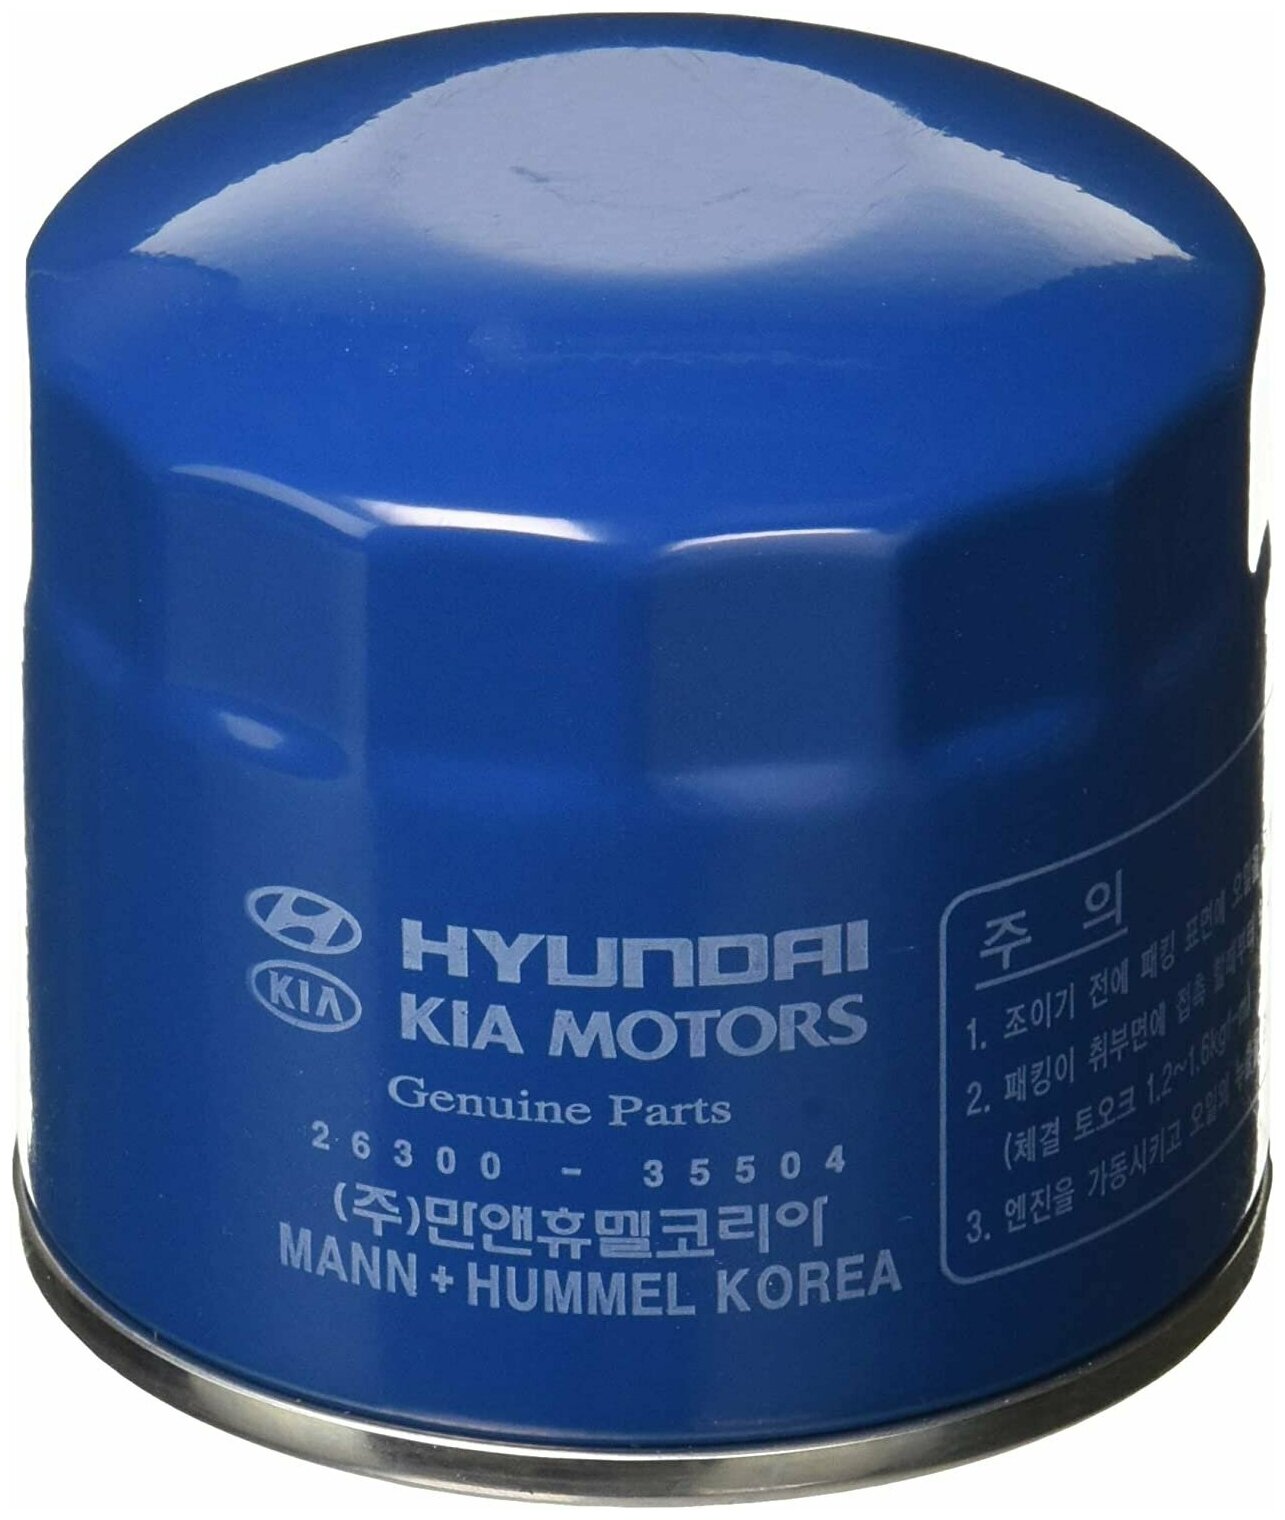 Масляный фильтр HYUNDAI 26300-35504